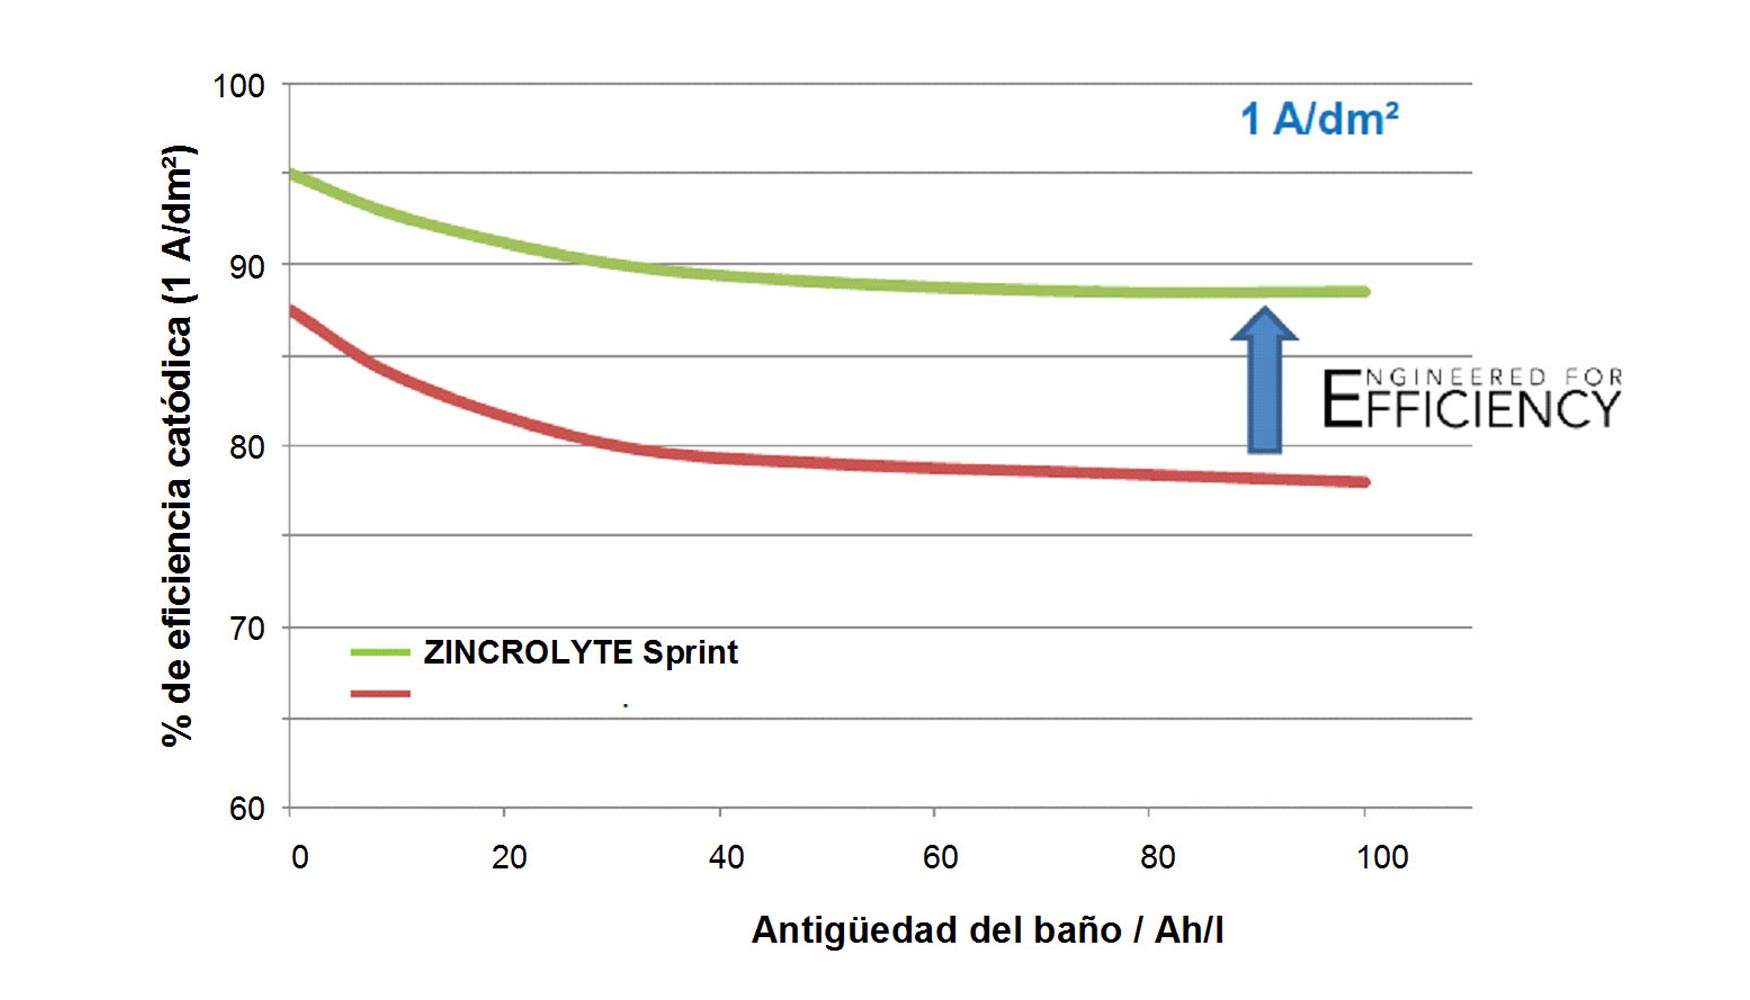 Figura 6: Comparativa de la eficiencia del Zincrolyte Sprint versus zinc-nquel convencional alcalino, trabajando a 3 A/dm2...